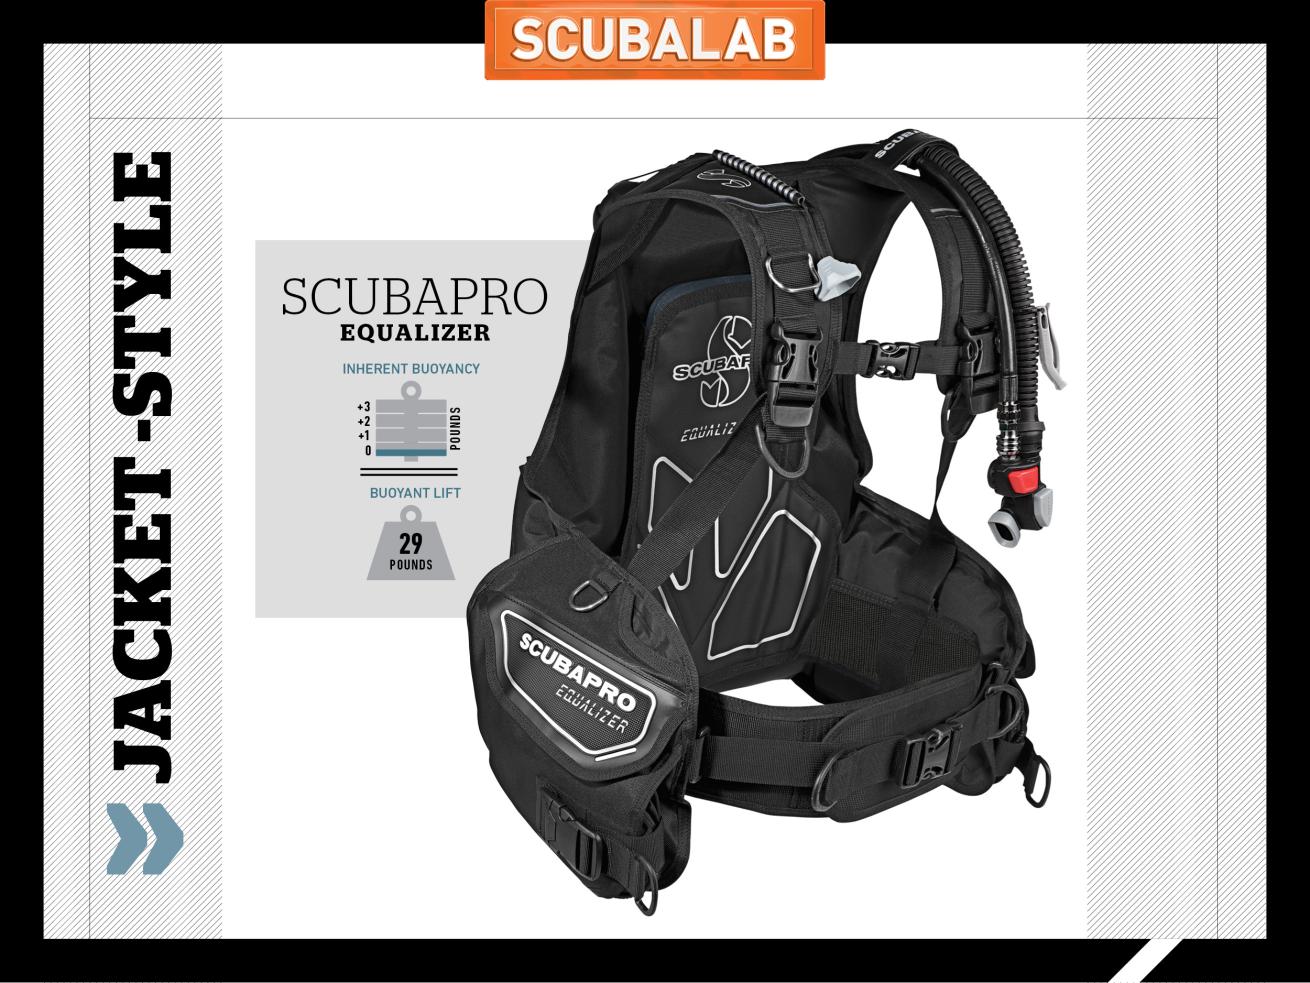 Scubapro Equalizer scuba diving BC ScubaLab review